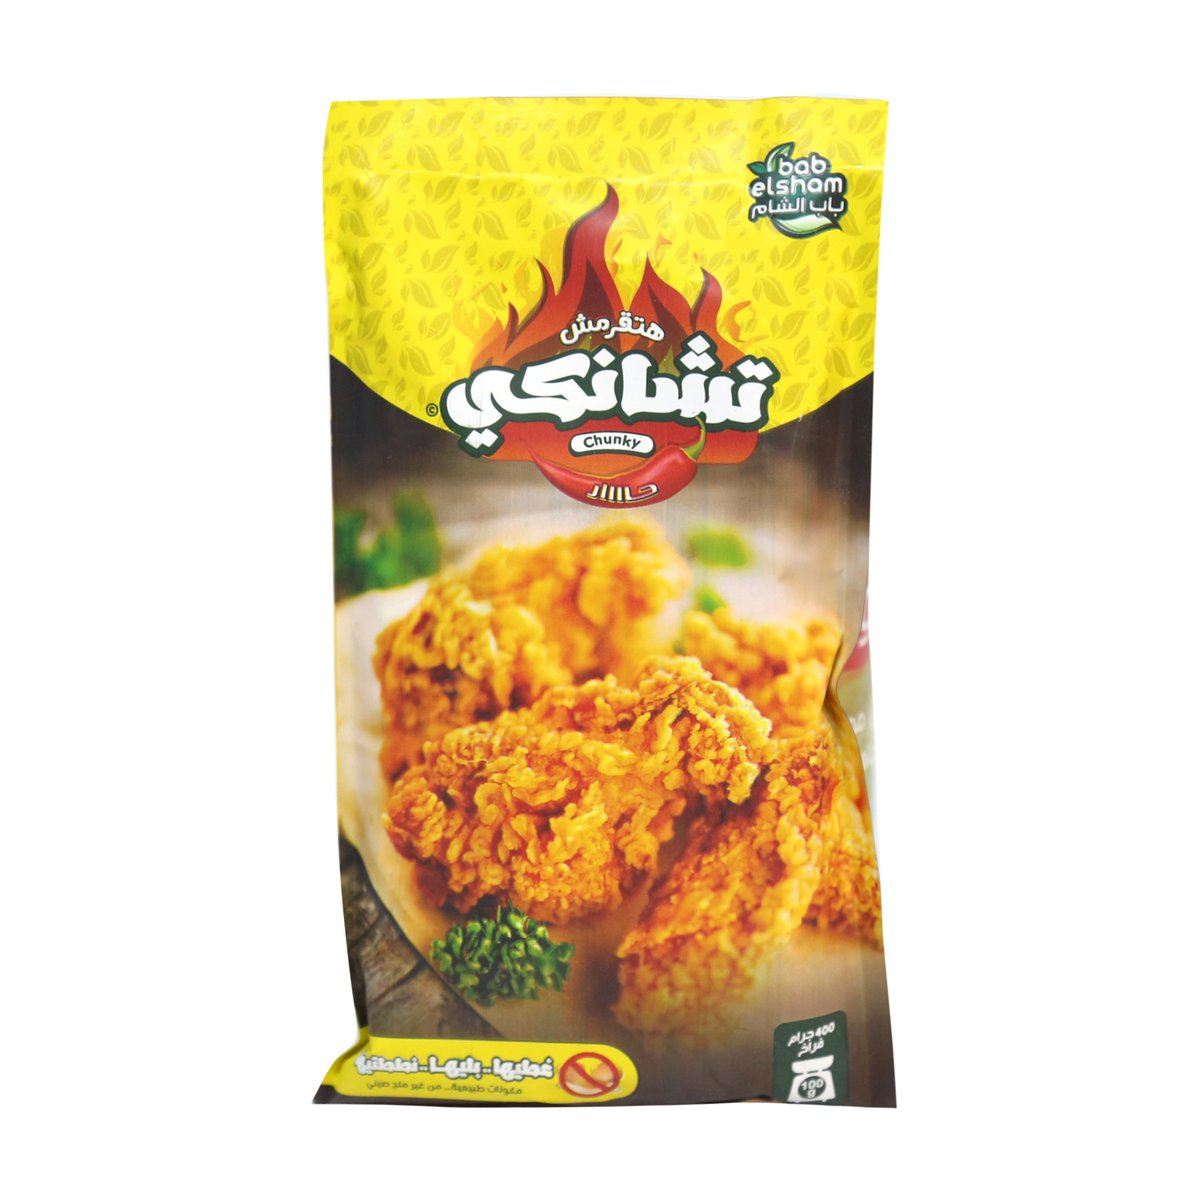 Bab Elsham Chunky Chicken Coat Hot 100 g